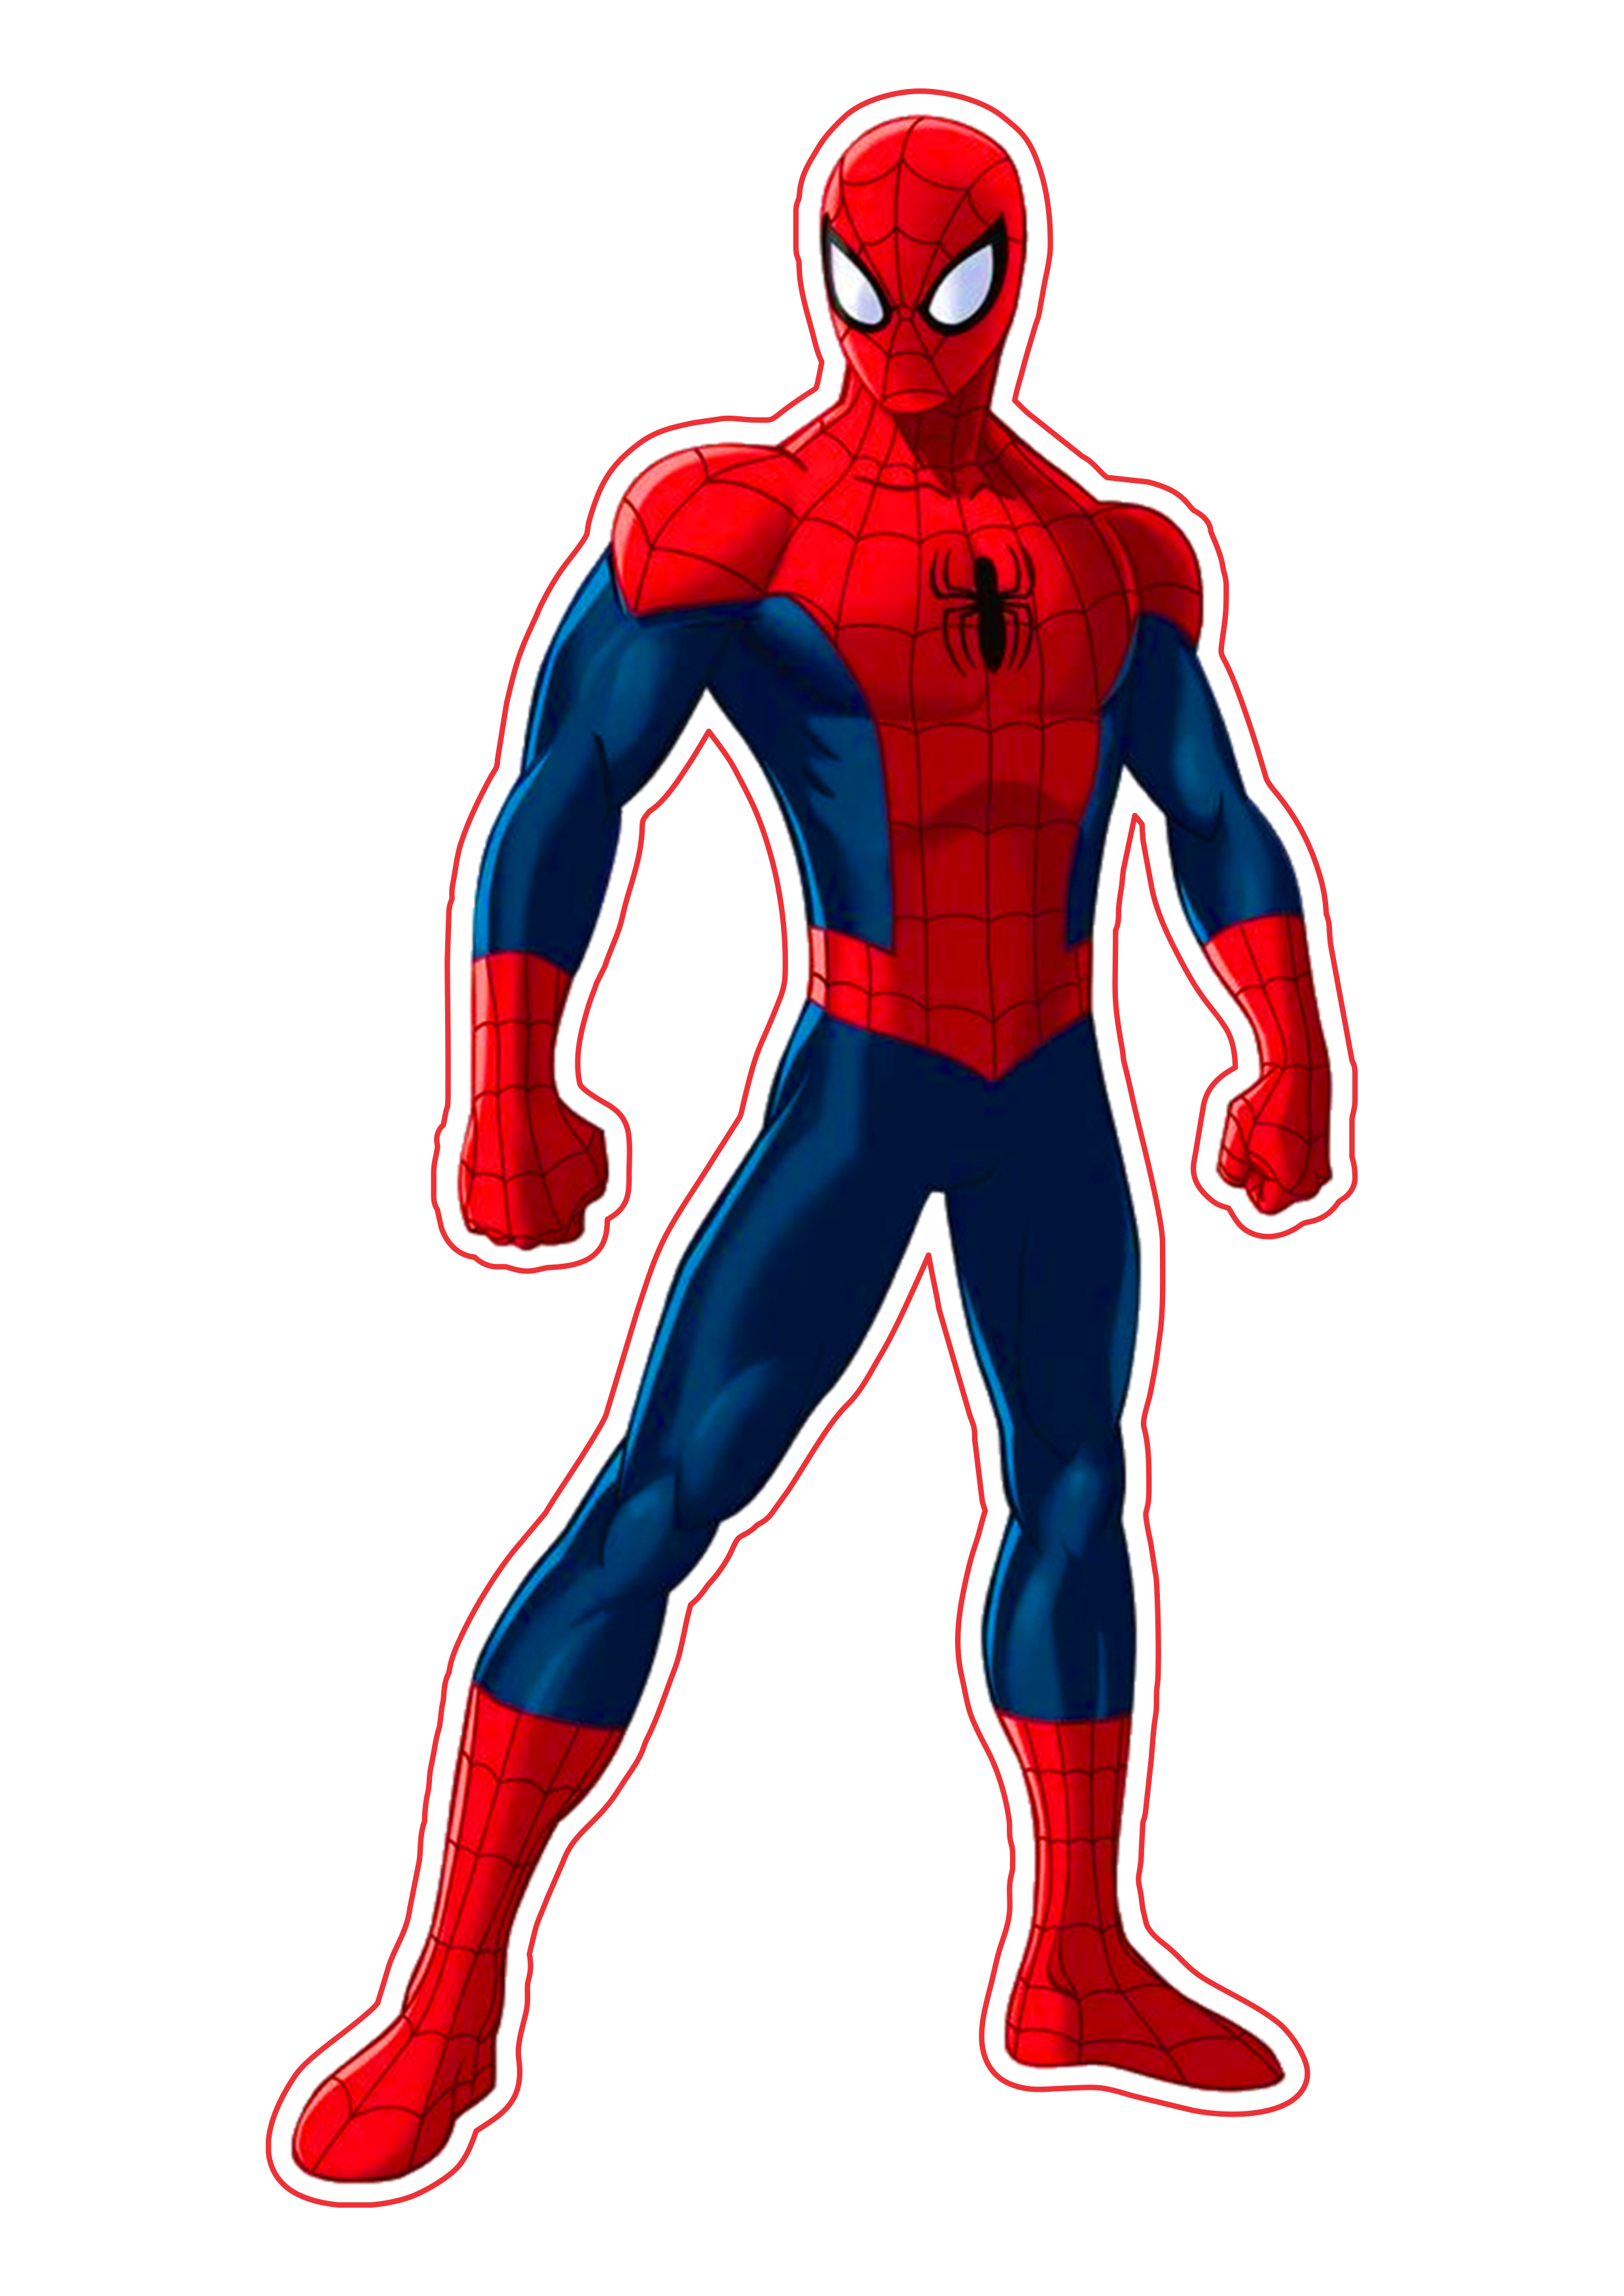 Homem aranha desenho ultimate imagem fundo transparente Marvel super heróis free png